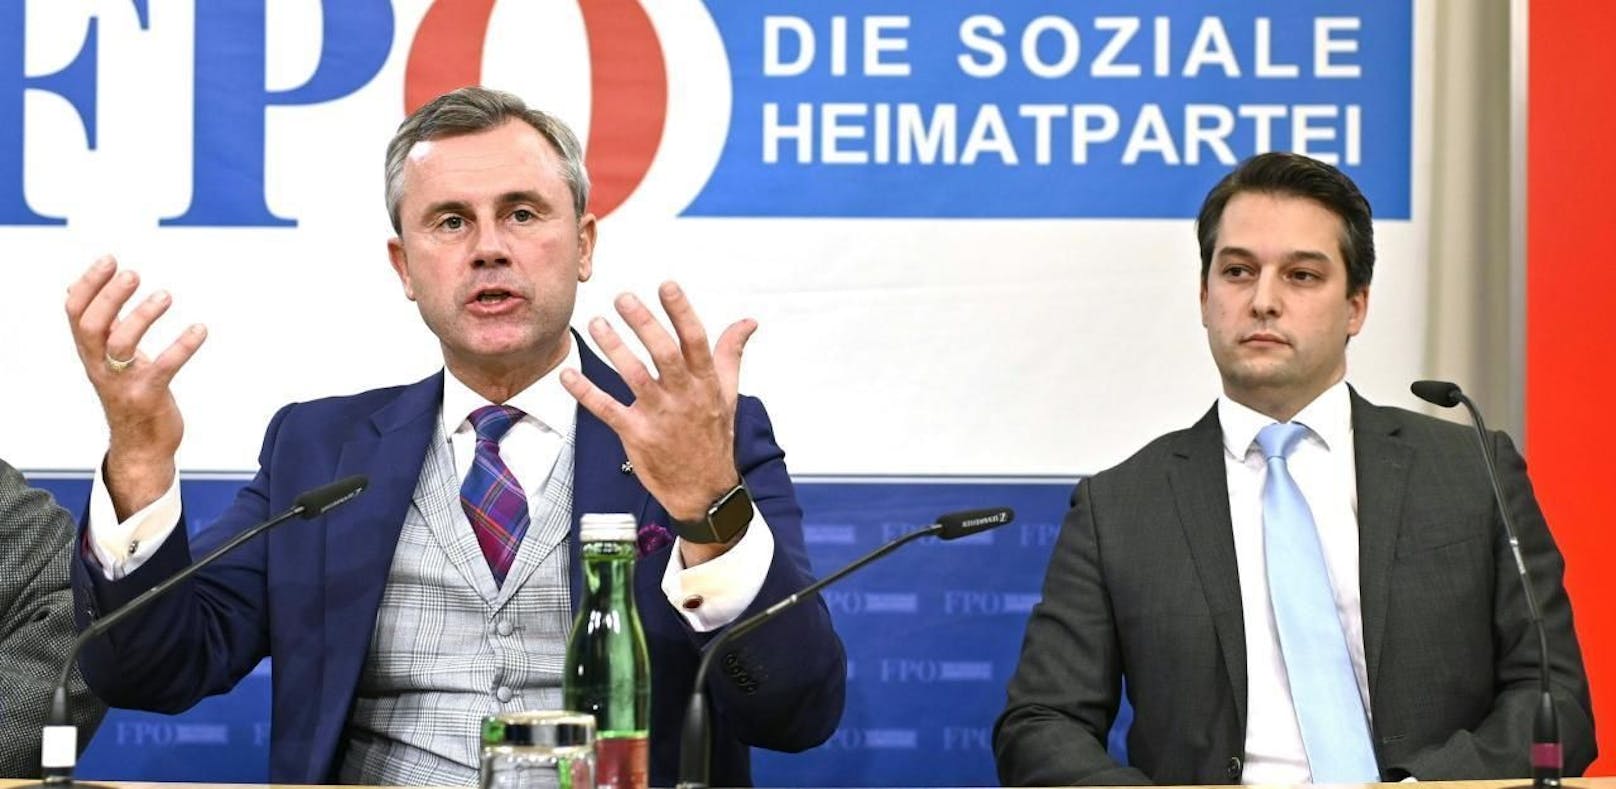 Die FP um Norbert Hofer kritisiert Türkis-Grün harsch.